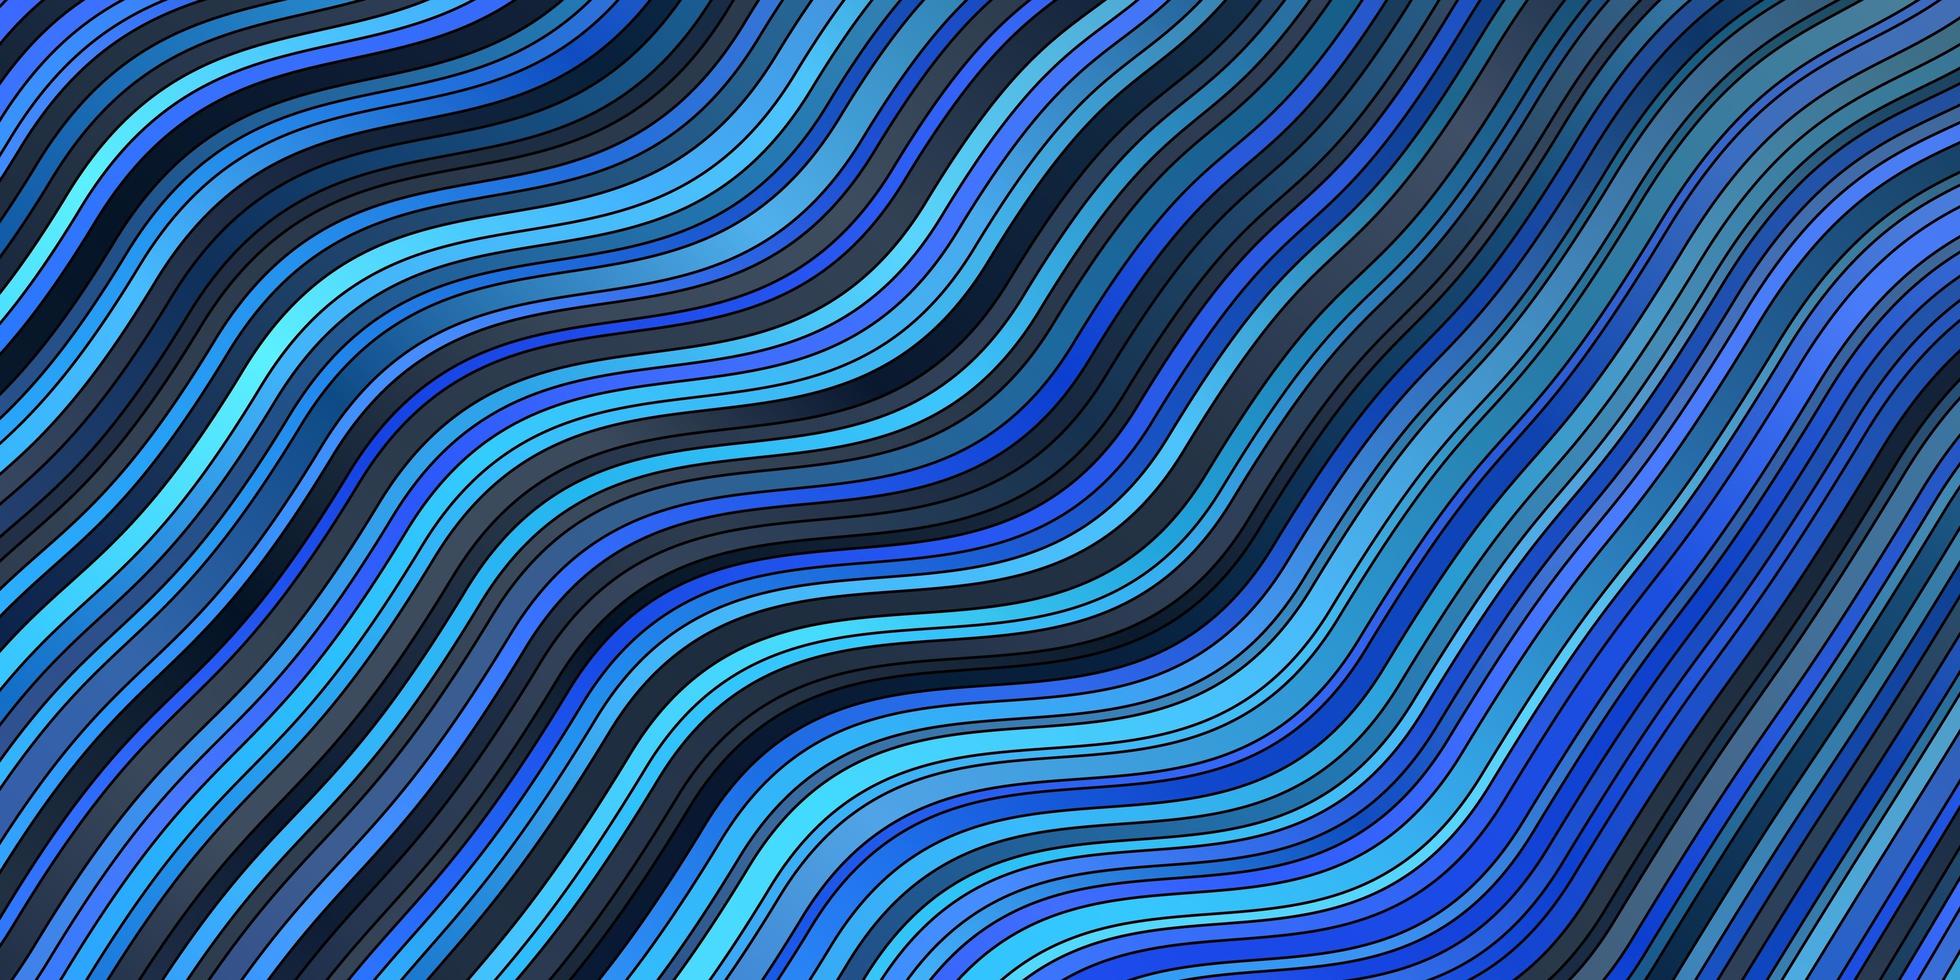 fundo vector azul claro com linhas curvas.